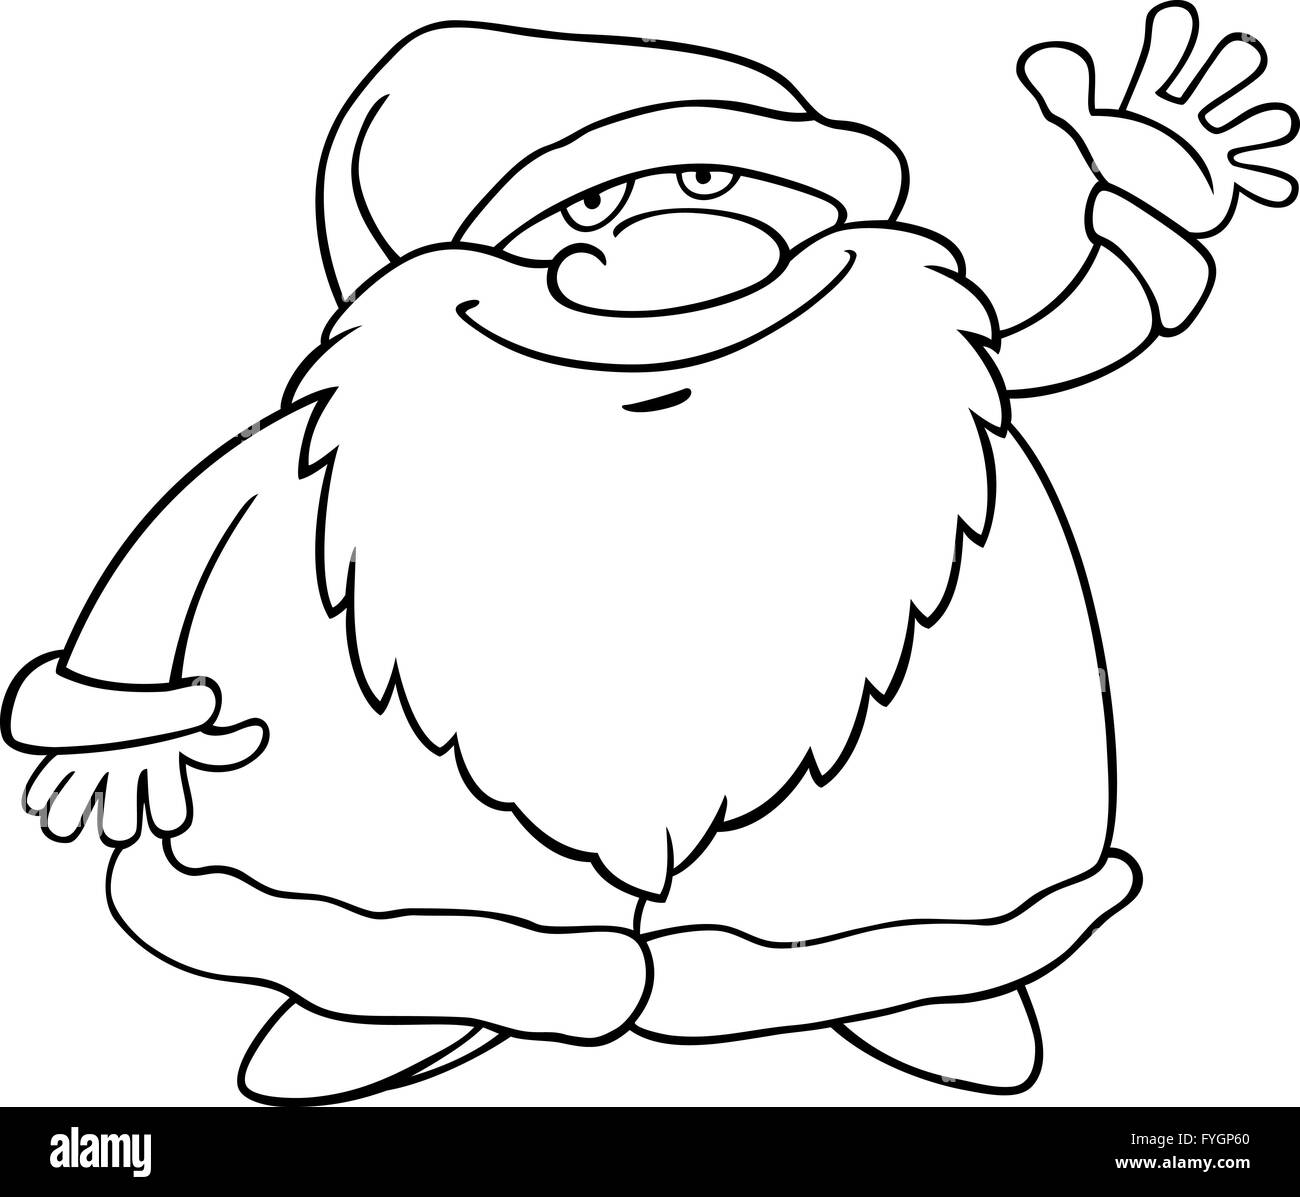 santa claus cartoon for coloring book Stock Photo